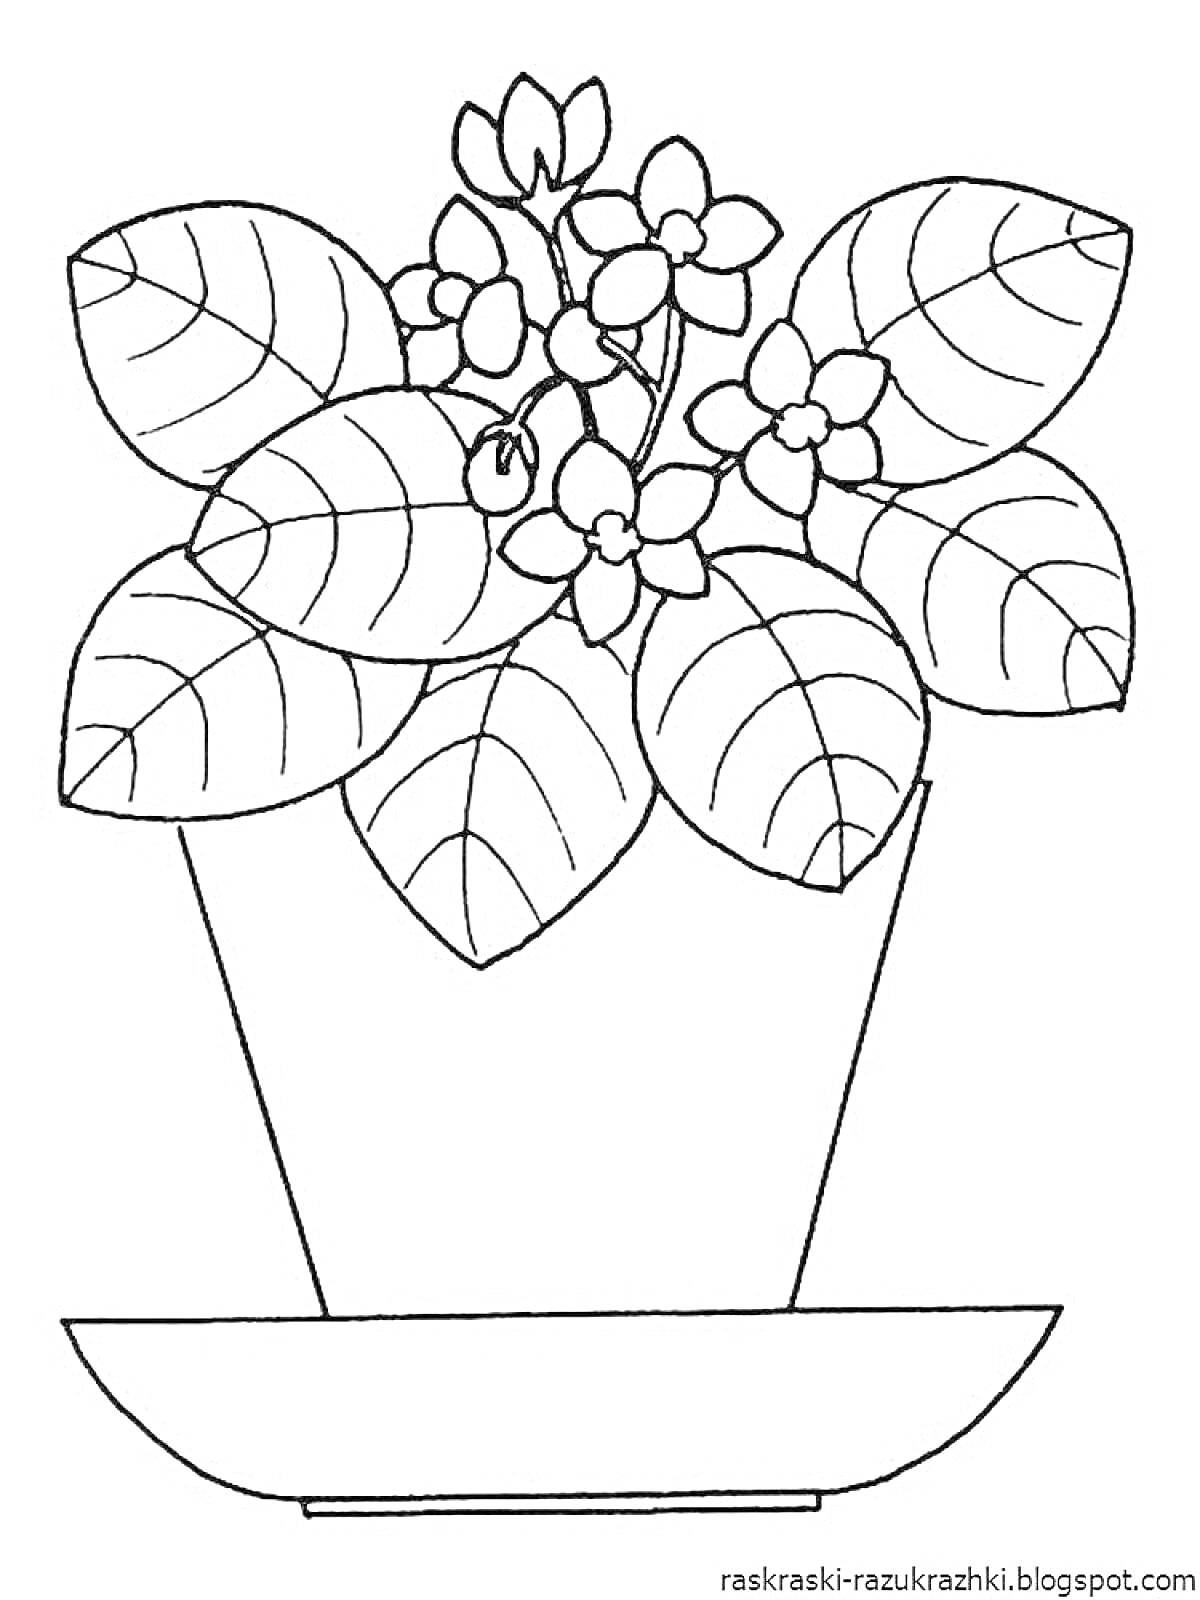 Раскраска Горшок с цветущим растением на поддоне, листья и цветы